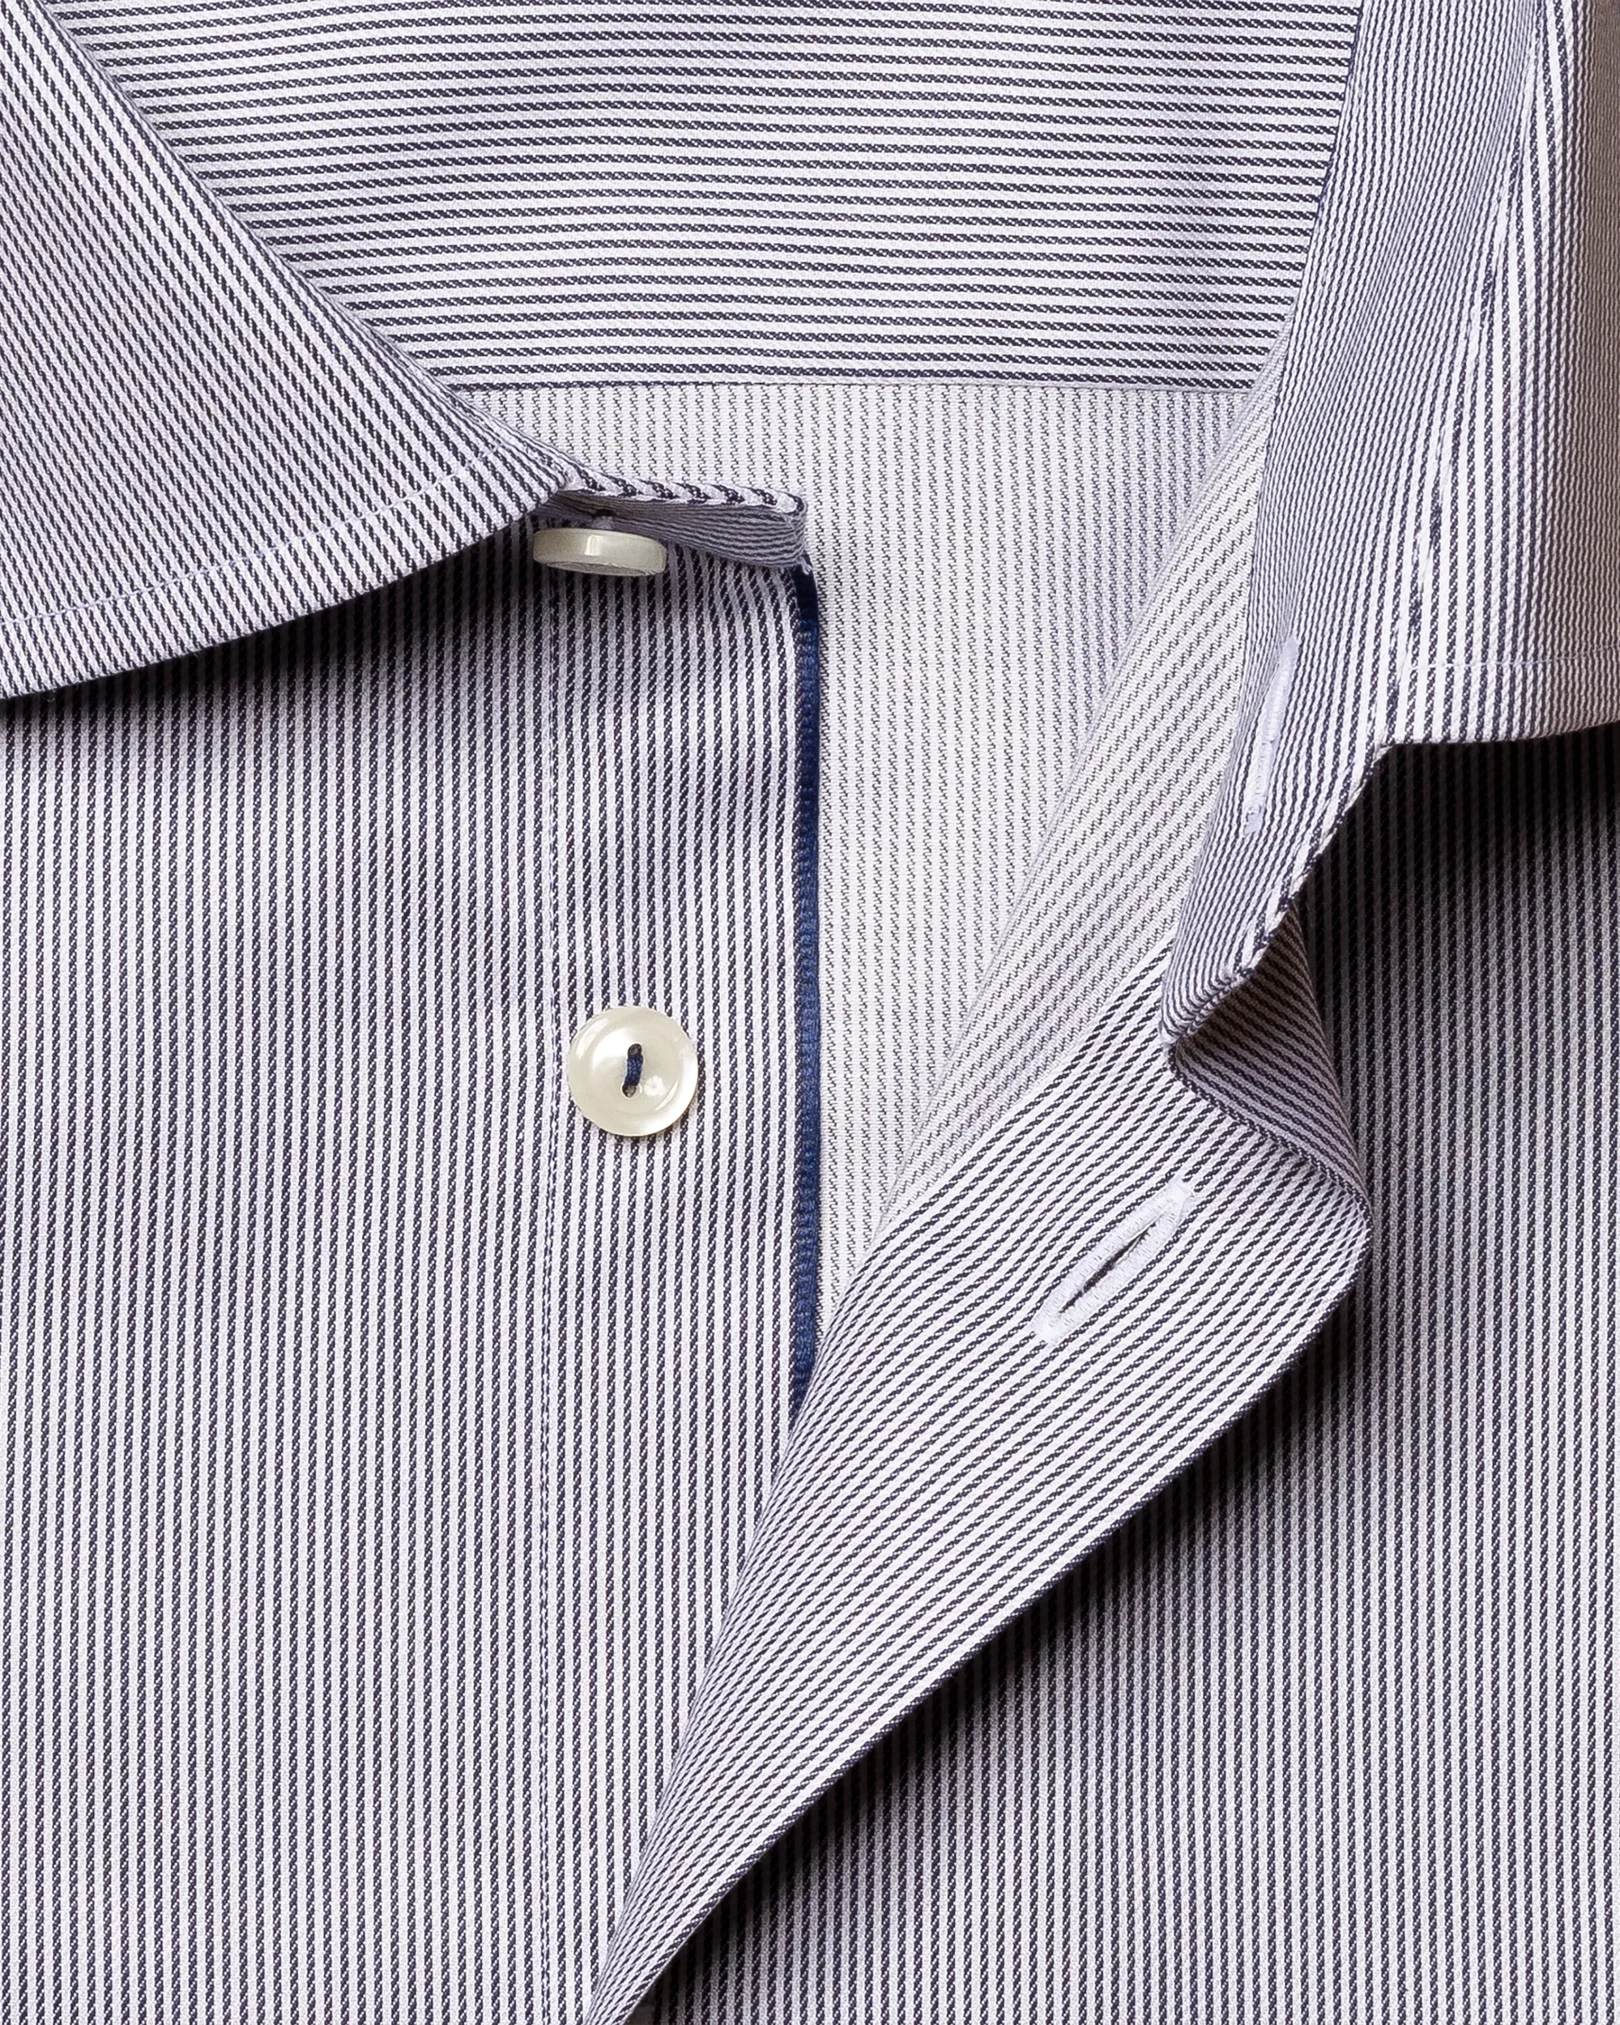 Eton - blue striped stretch twill shirt